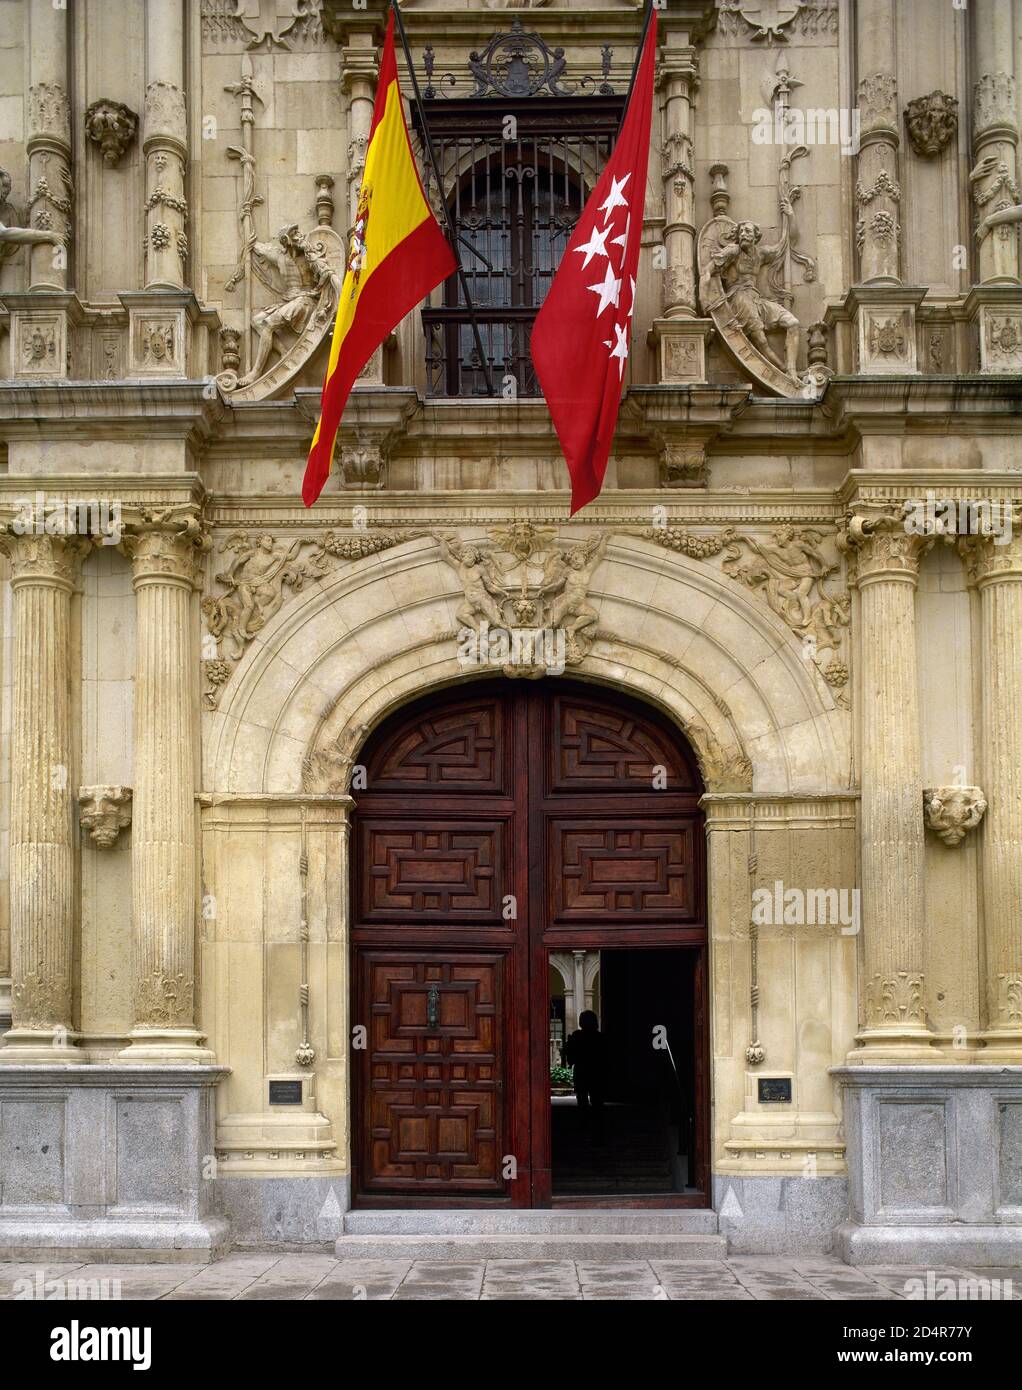 Spanien, Kommune von Madrid, Alcala de Henares. Universität oder College von San Ildefonso (Alte Universität). Gegründet von Kardinal Cisneros im Jahr 1498. Der Bau begann im 15. Jahrhundert und wurde von Pedro Gumiel im 16. Jahrhundert abgeschlossen. Architektonisches Detail der Hauptfassade (1543), erbaut von Rodrigo de Hontañon (1500-1577) im plateresken Stil. Eingang, Beispiel der spanischen Renaissance-Stil. Stockfoto